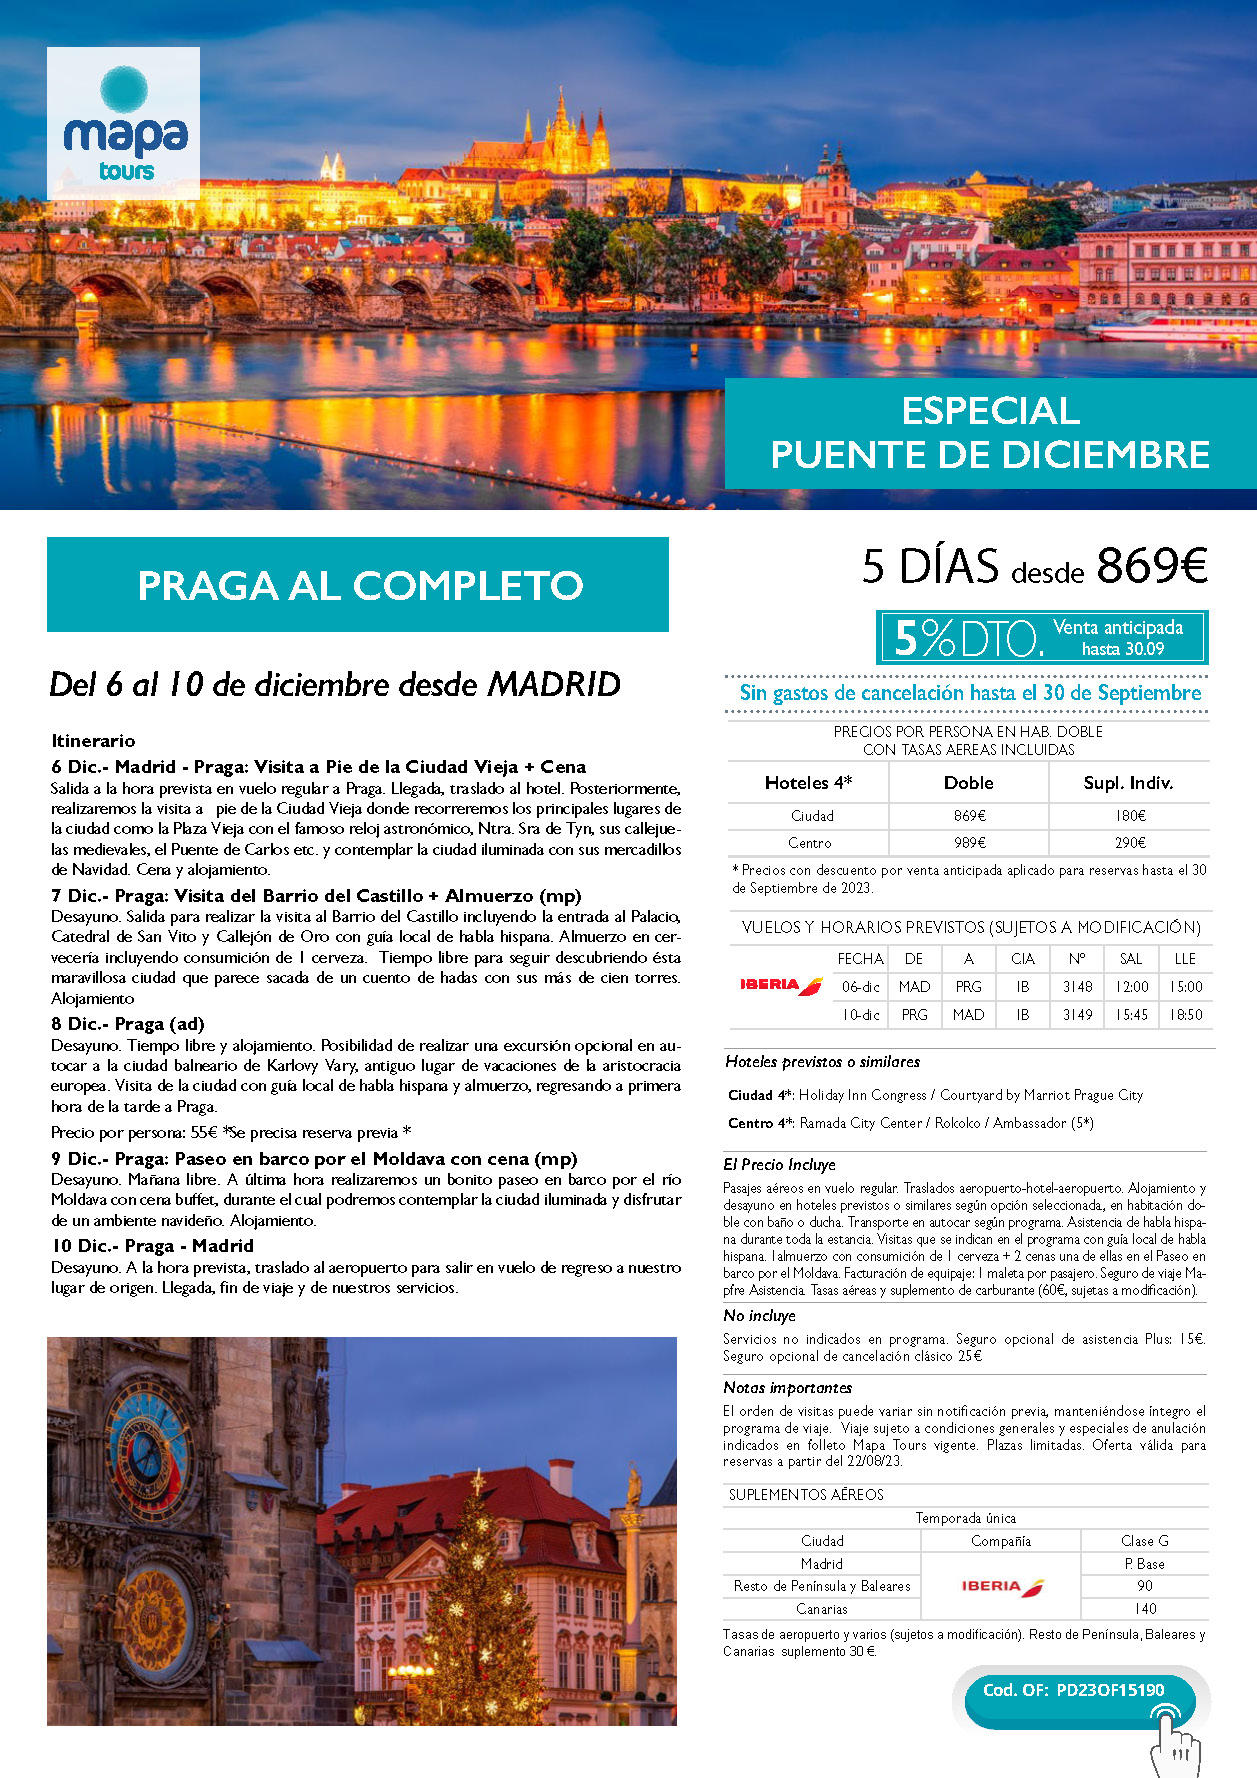 Oferta Mapa Tours Puente de Diciembre 2023 Praga al Completo 5 dias salida 6 de diciembre en vuelo directo desde Madrid